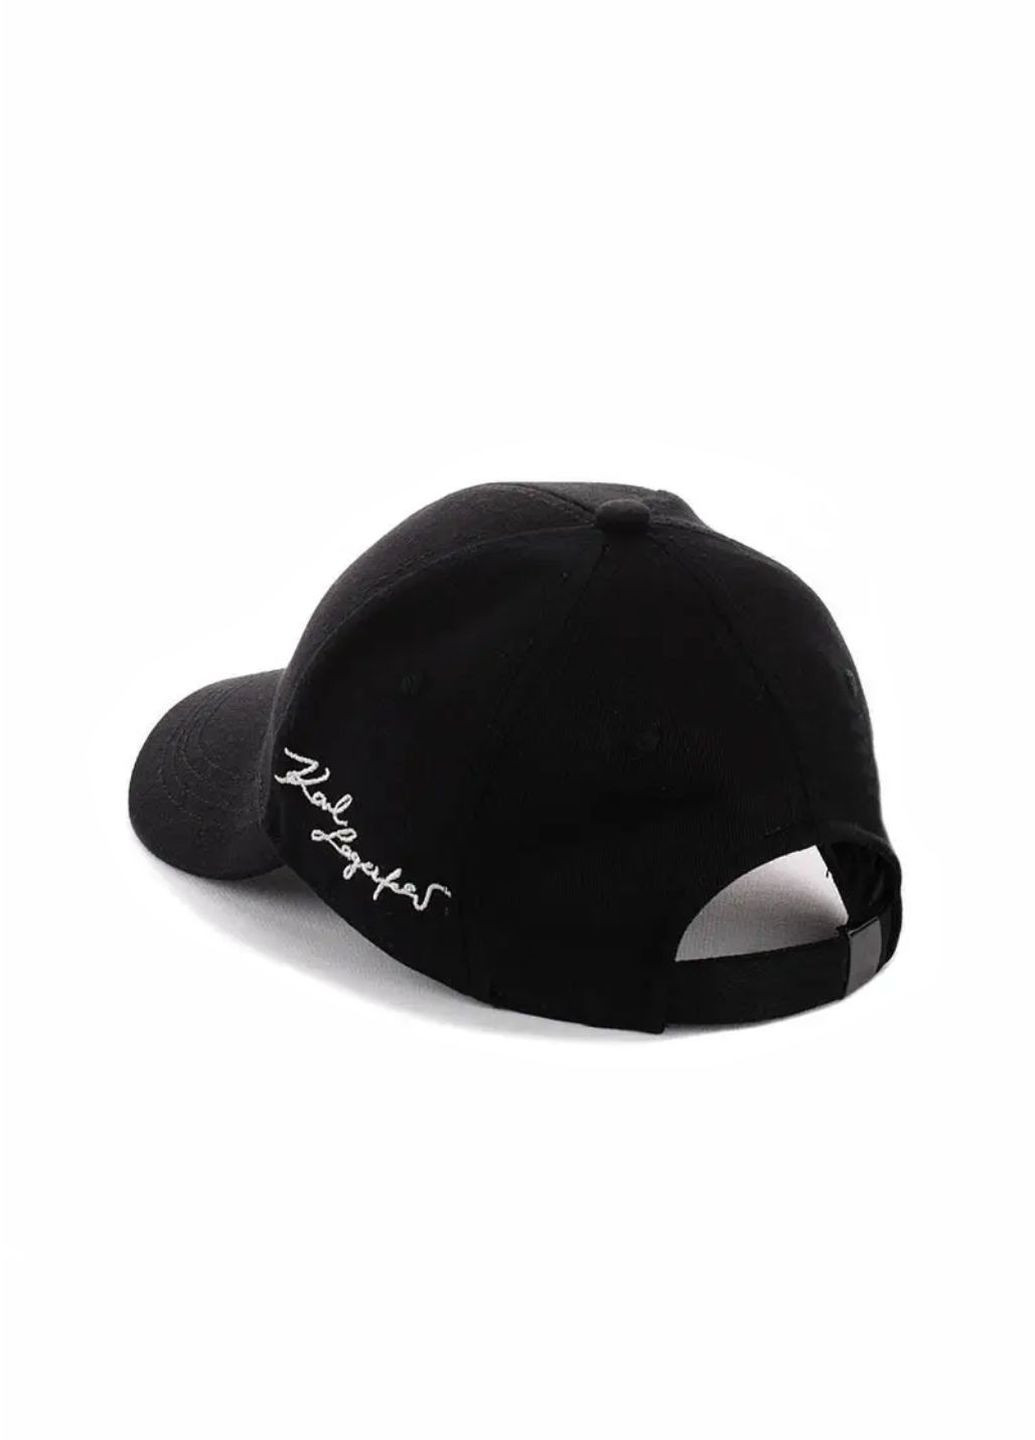 Молодіжна кепка Карл Лагерфельд / Karl Lagerfeld S/M No Brand кепка унісекс (278279345)